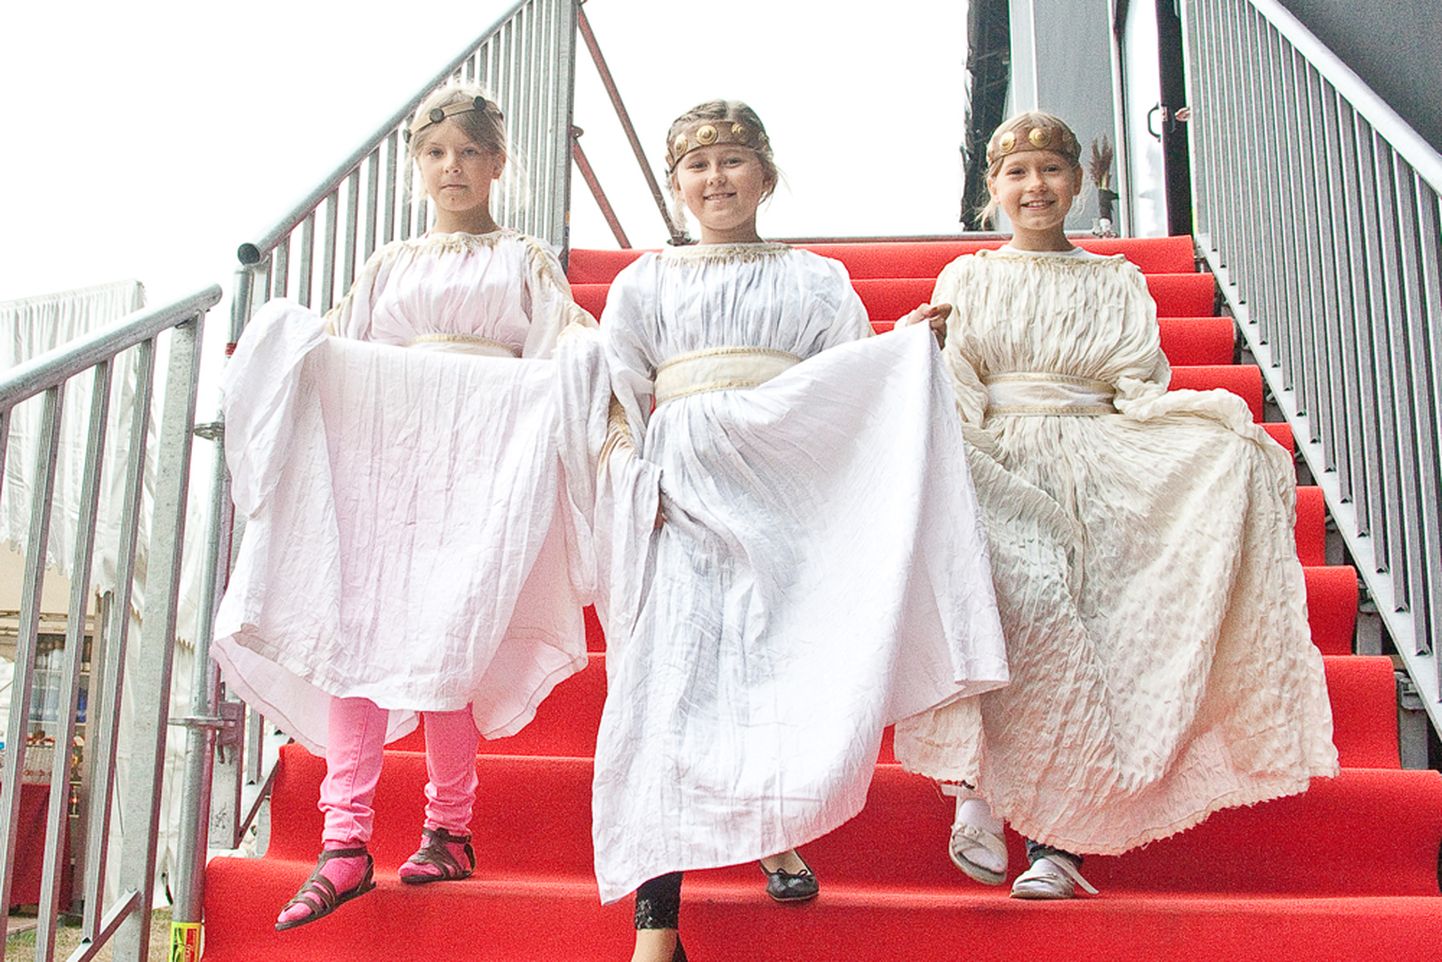 ÕNDSAS TEADMATUSES: Vasakult Kertlyn Kiil, Annabel Kallas ja Helena Paiste tulevad pärast kostüümiproovi trepist alla, et peagi algavas proovis teada saada, mida neil laval teha tuleb. Foto: Tõnu Veldre